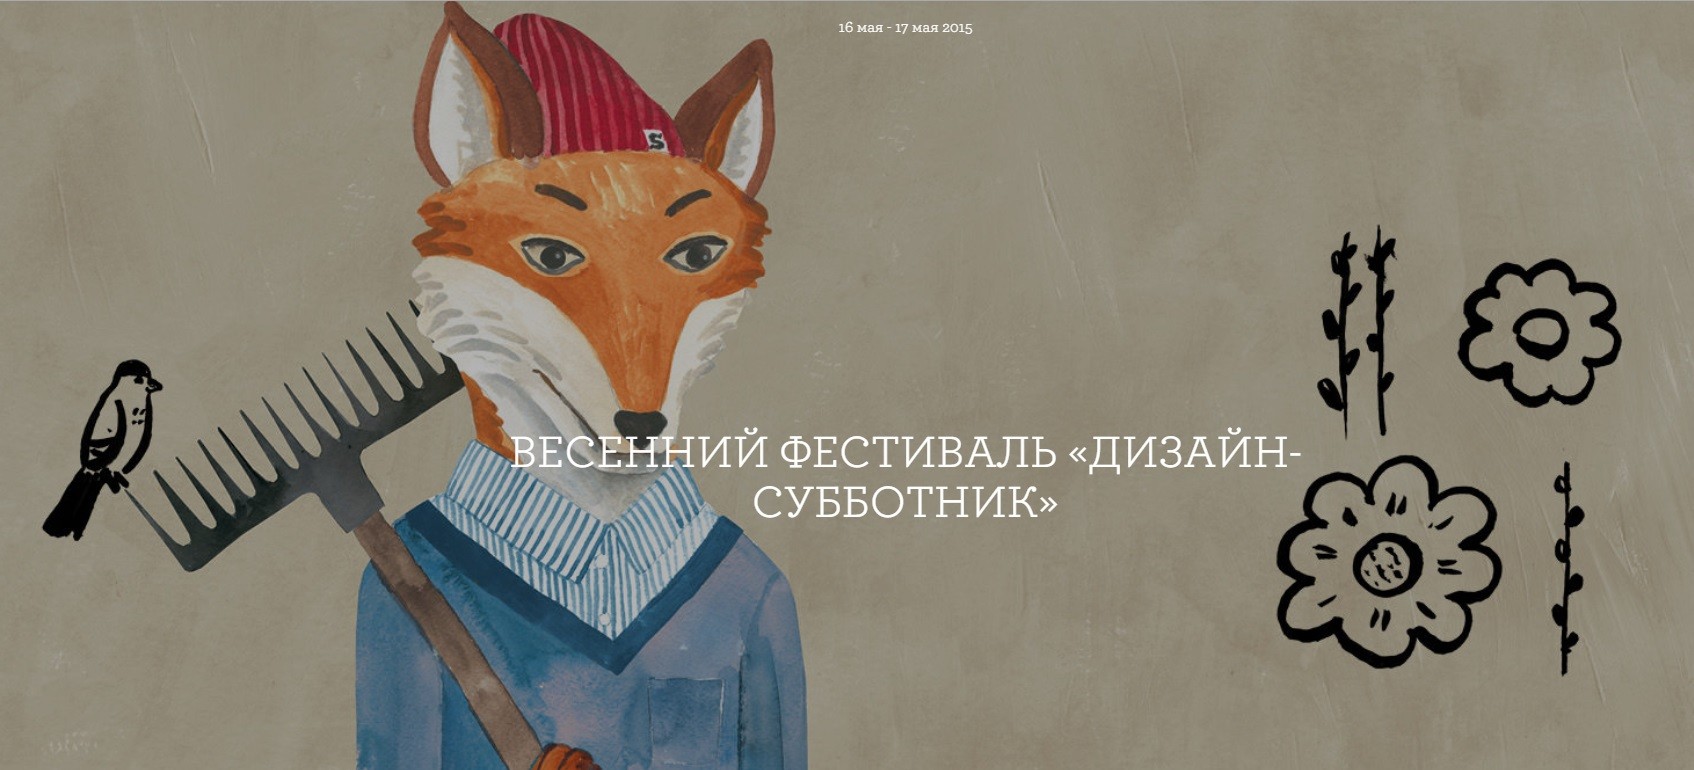 Фестиваль «Дизайн-Субботник» Seasons of life. 16 – 17 мая, 2015 г.